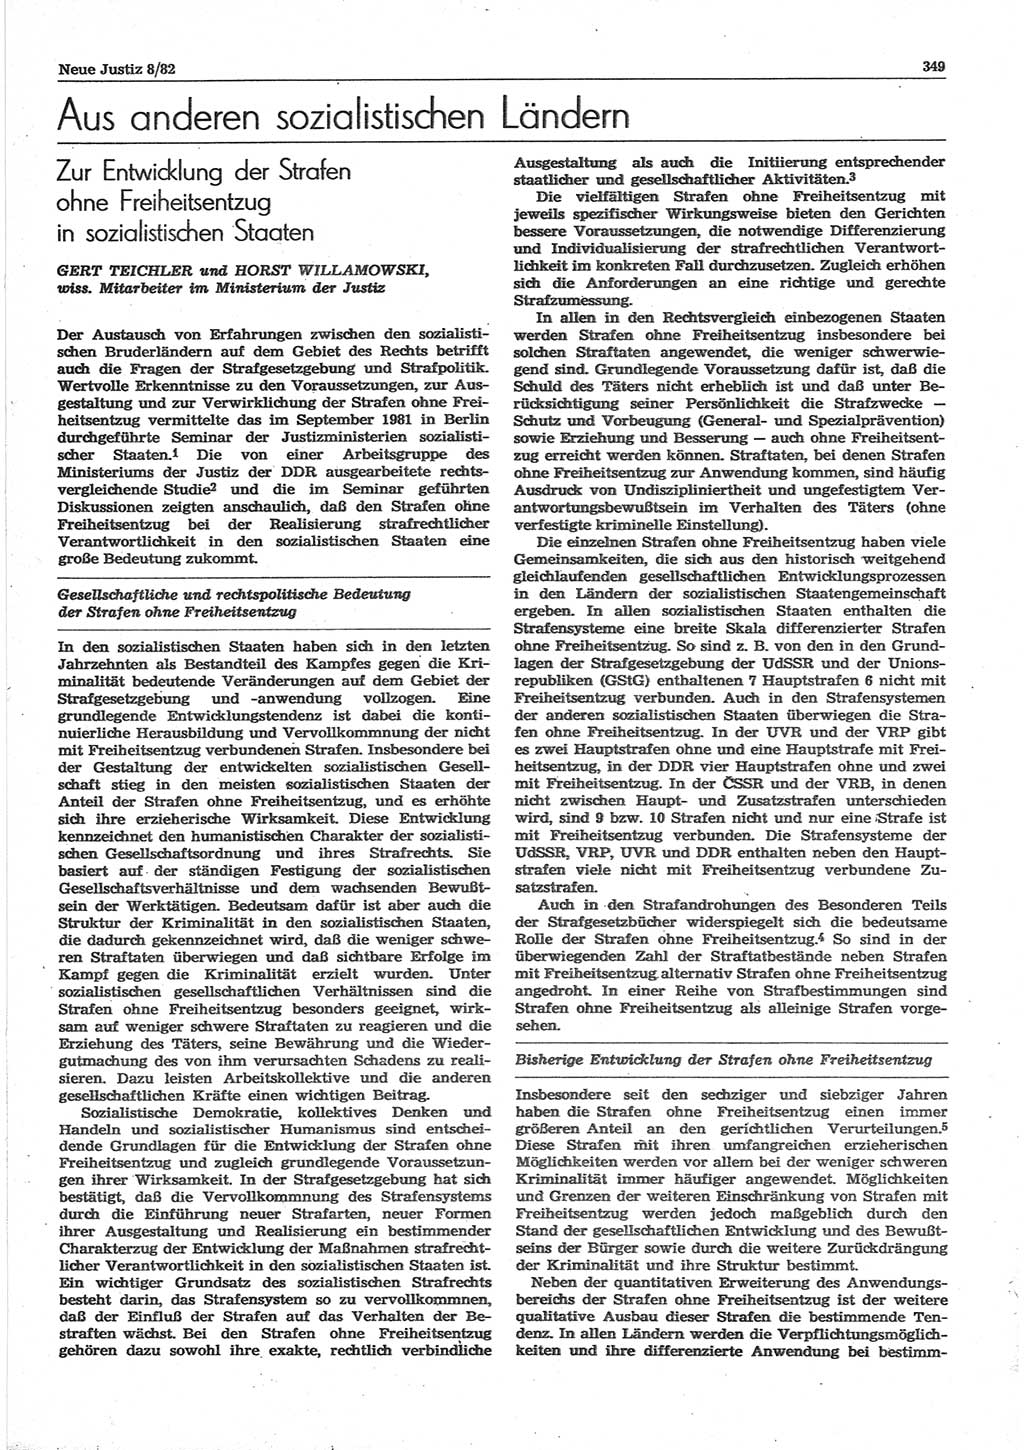 Neue Justiz (NJ), Zeitschrift für sozialistisches Recht und Gesetzlichkeit [Deutsche Demokratische Republik (DDR)], 36. Jahrgang 1982, Seite 349 (NJ DDR 1982, S. 349)